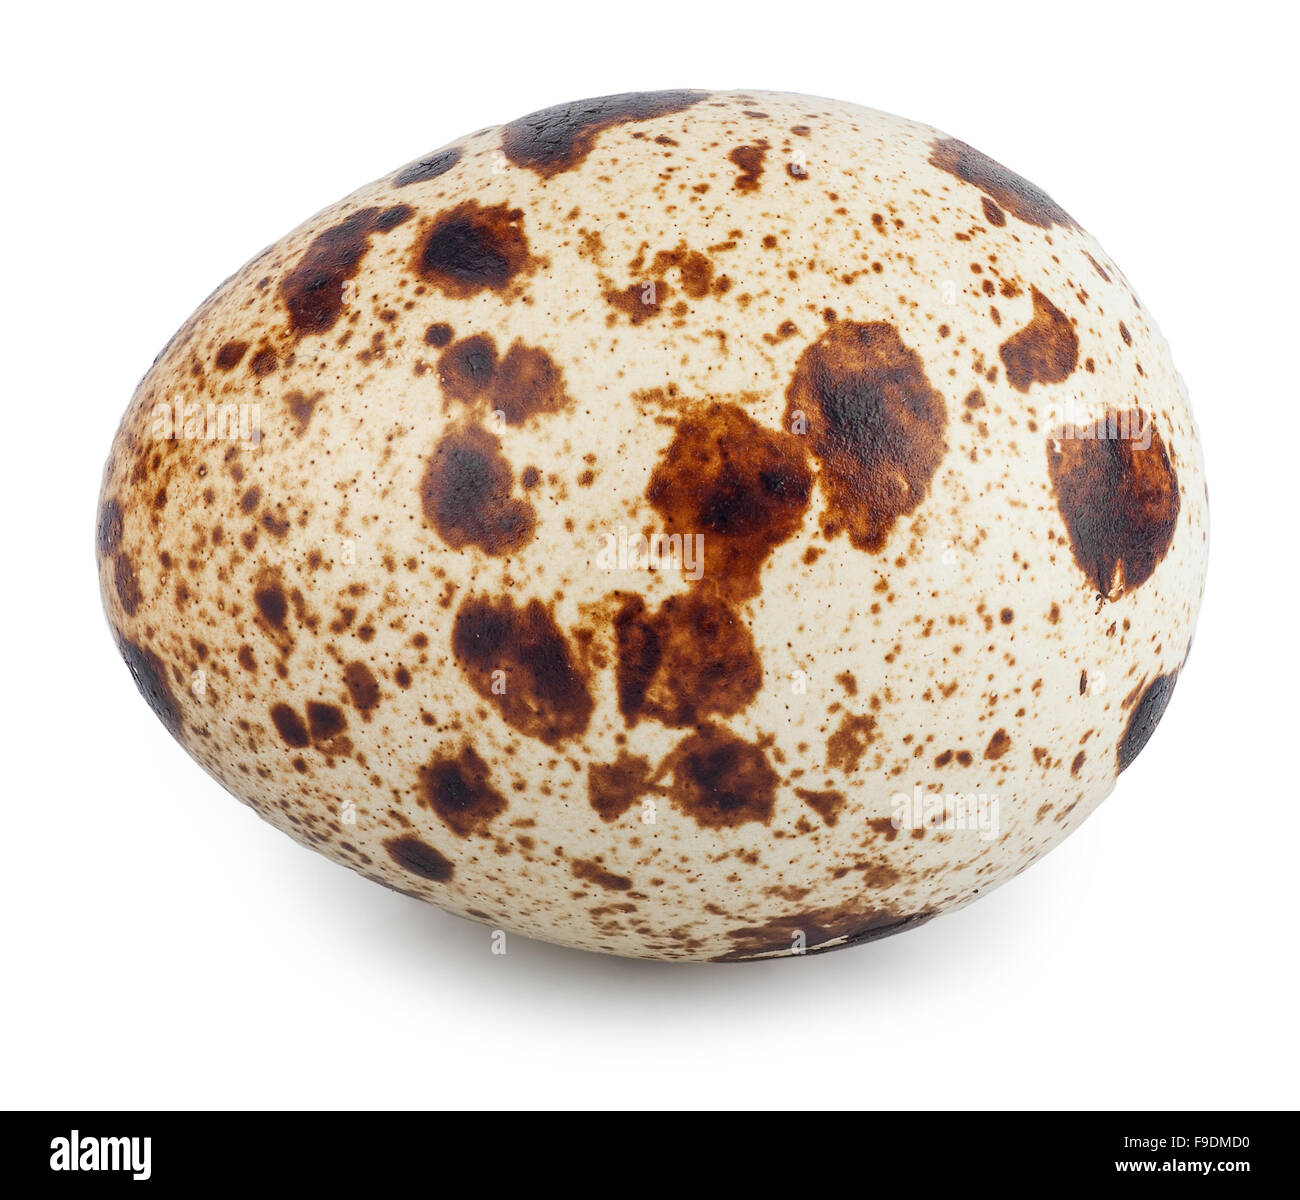 One quail egg isolated on white background Stock Photo